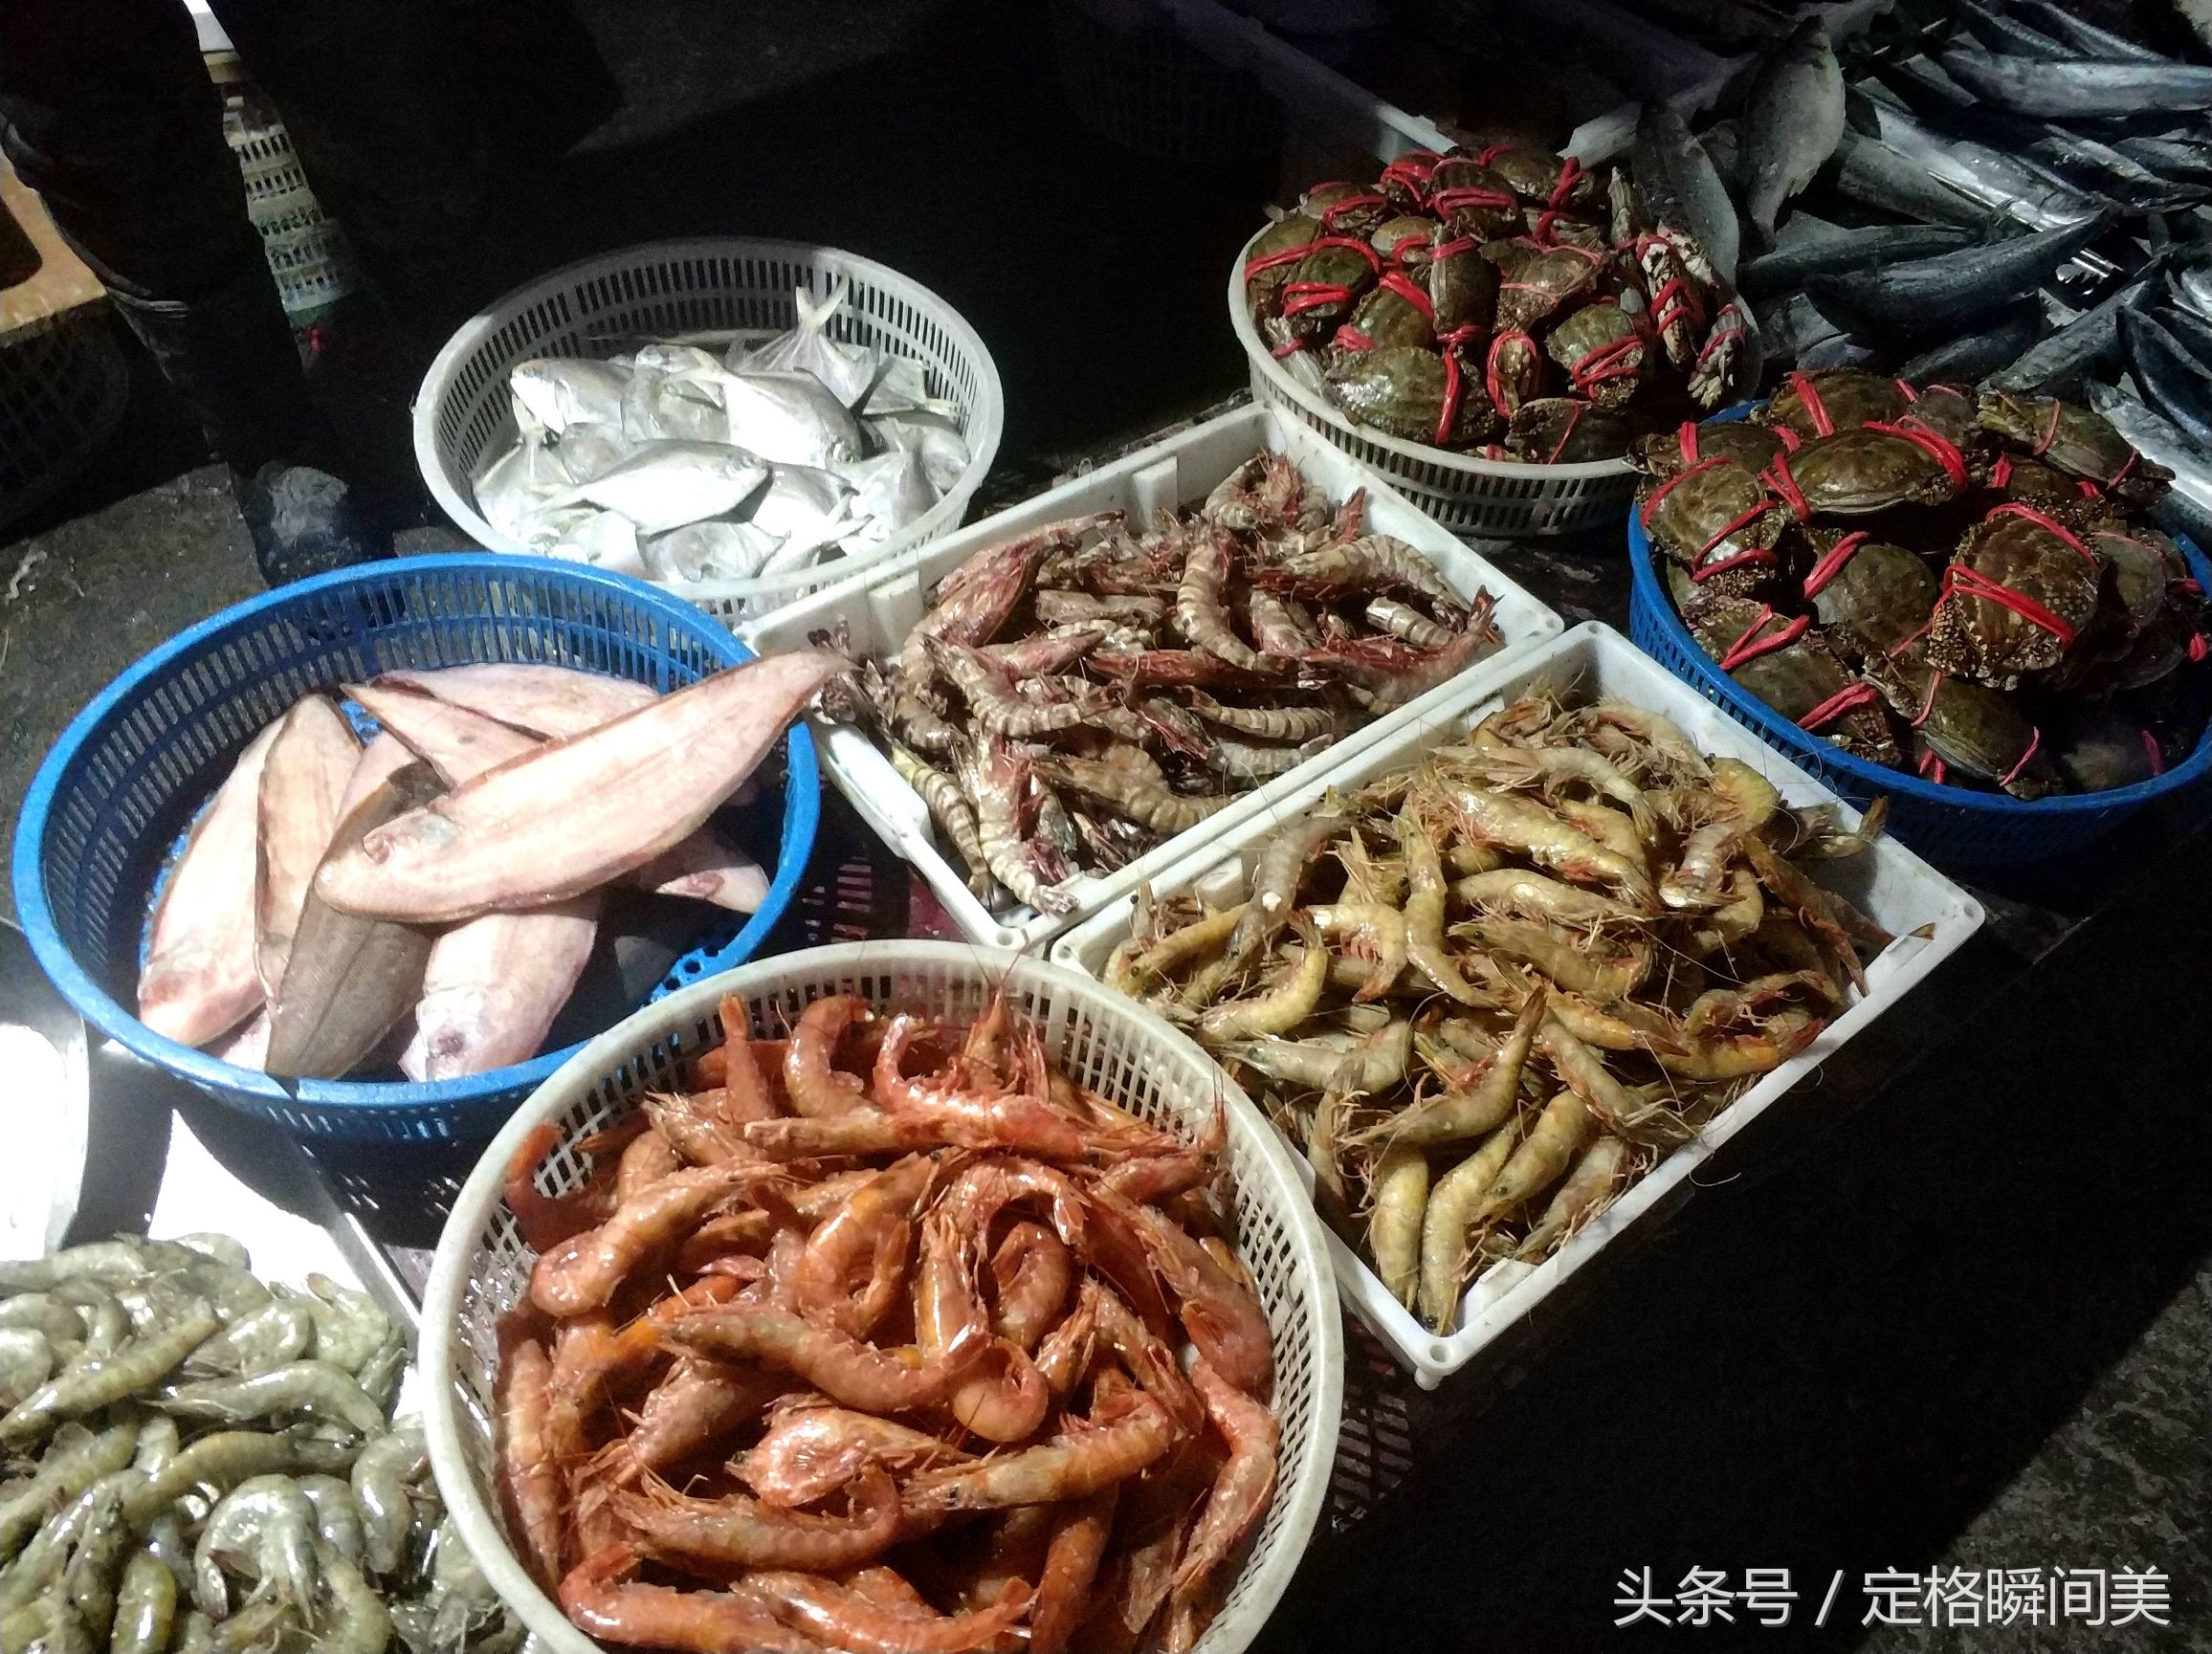 回家过年青岛海鲜市场迎来购物高峰38元梭子蟹海捕大虾最畅销